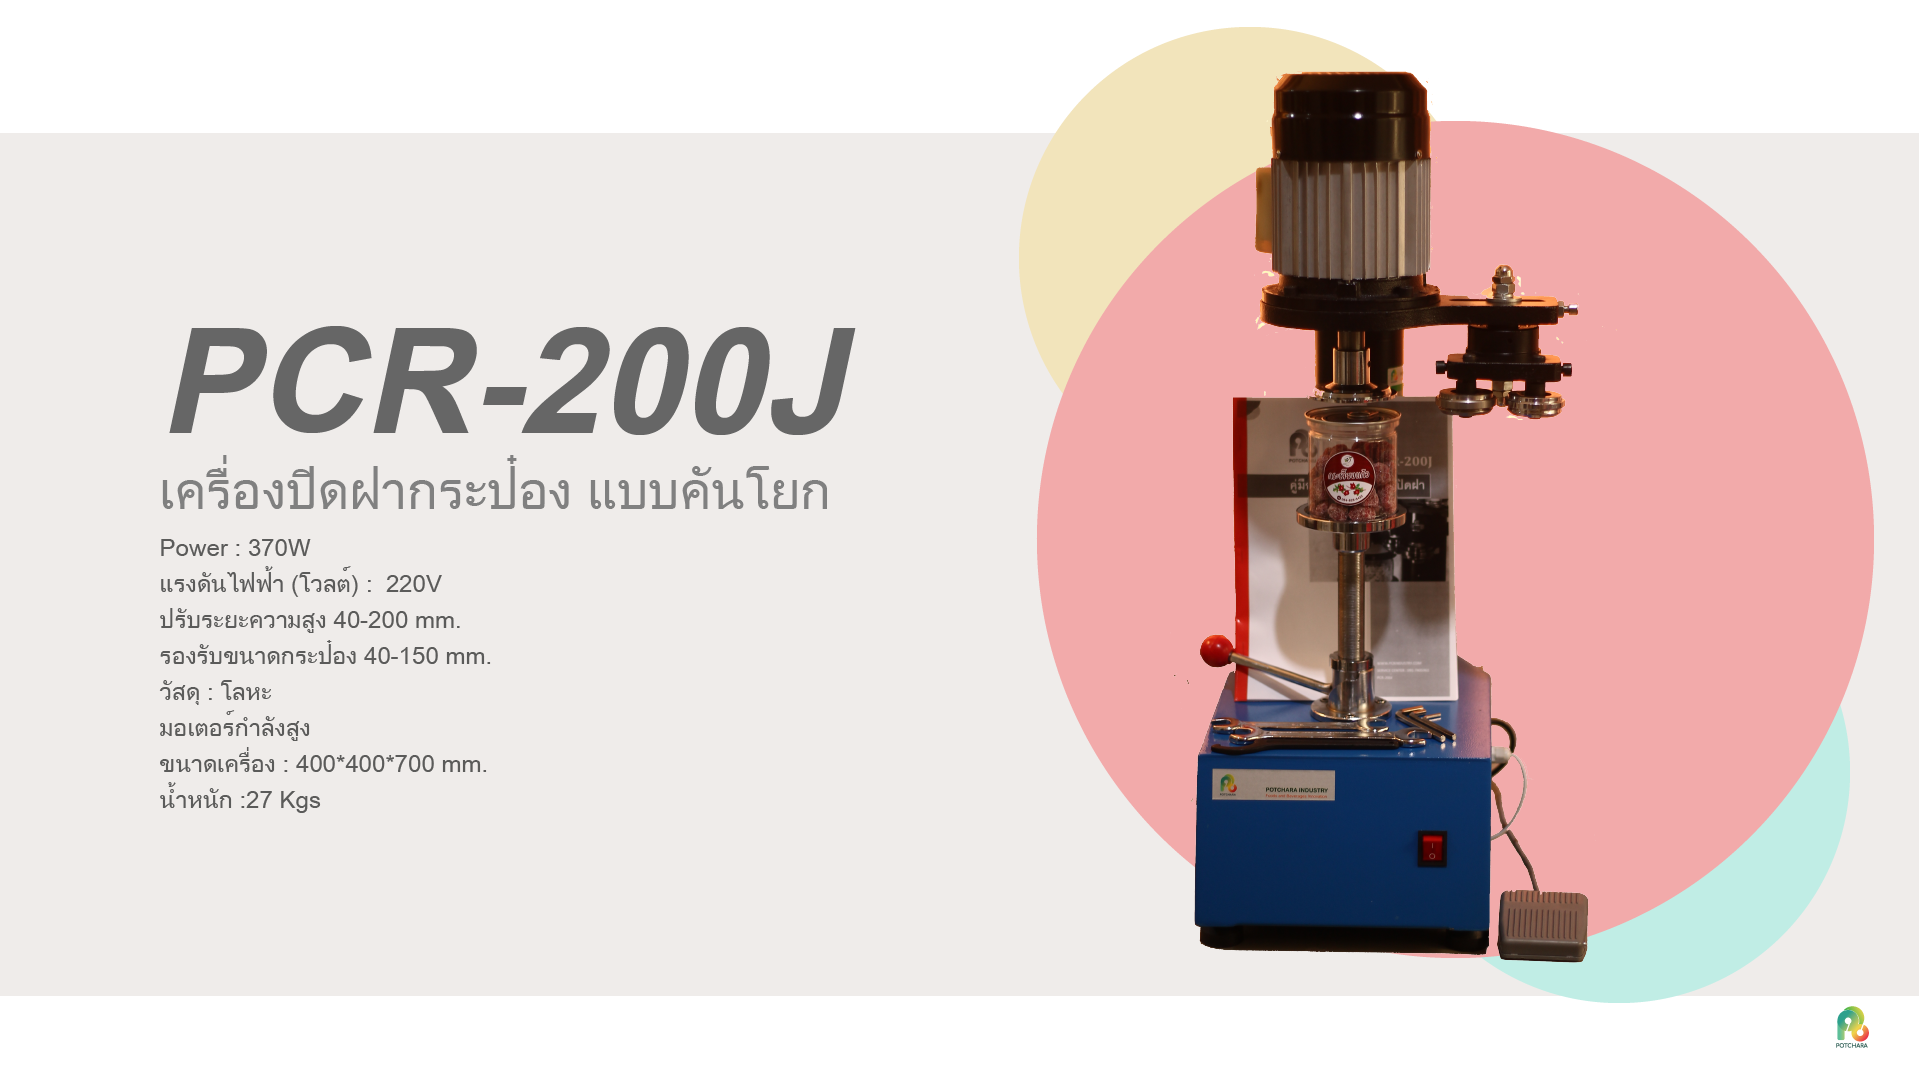 PCR-200J